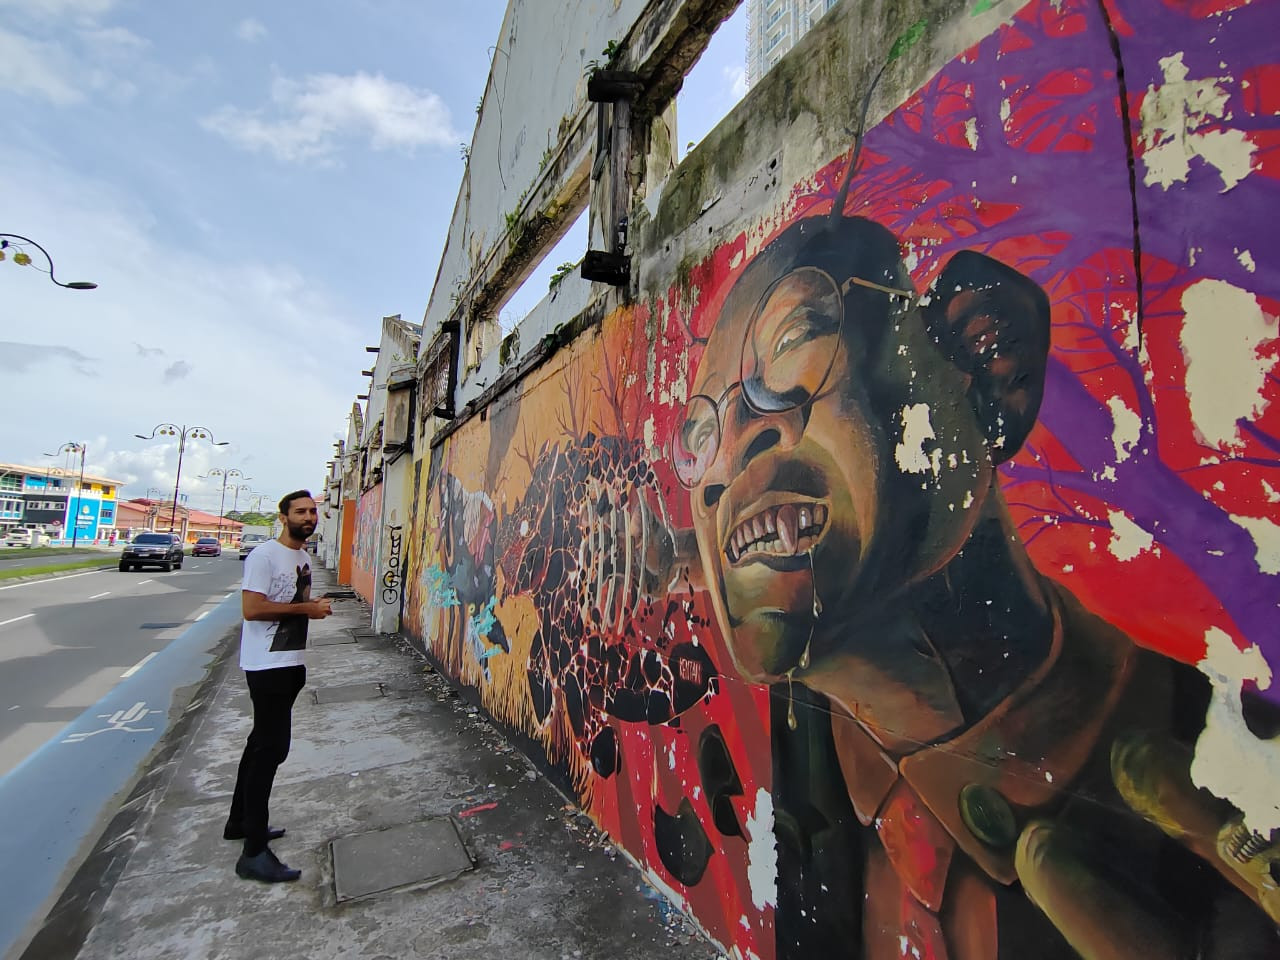 Jared Abdul Rahman gives guided tours of the street art scene in KK. – Shazmin Shamsuddin pic